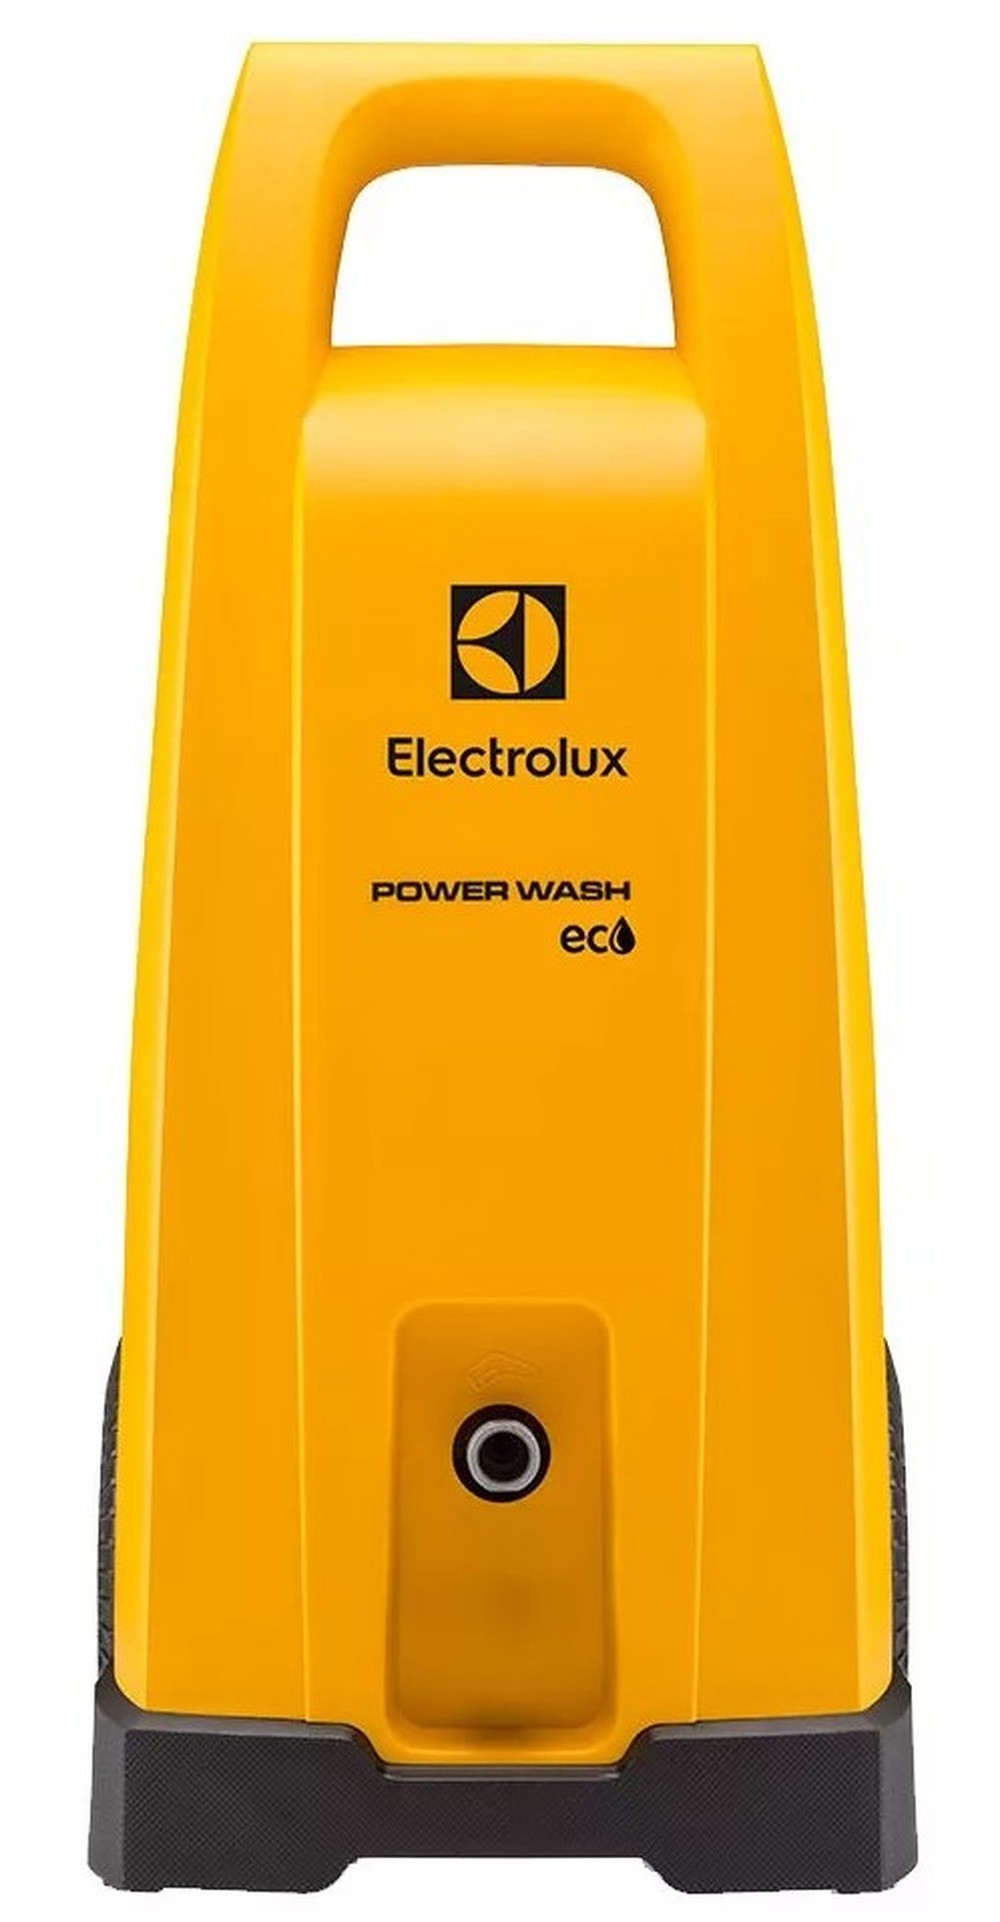 Lavadora de alta pressão Electrolux Power Wash Eco EWS30 amarela de 1.45kW com 1800psi de pressão máxima 220V - 60Hz